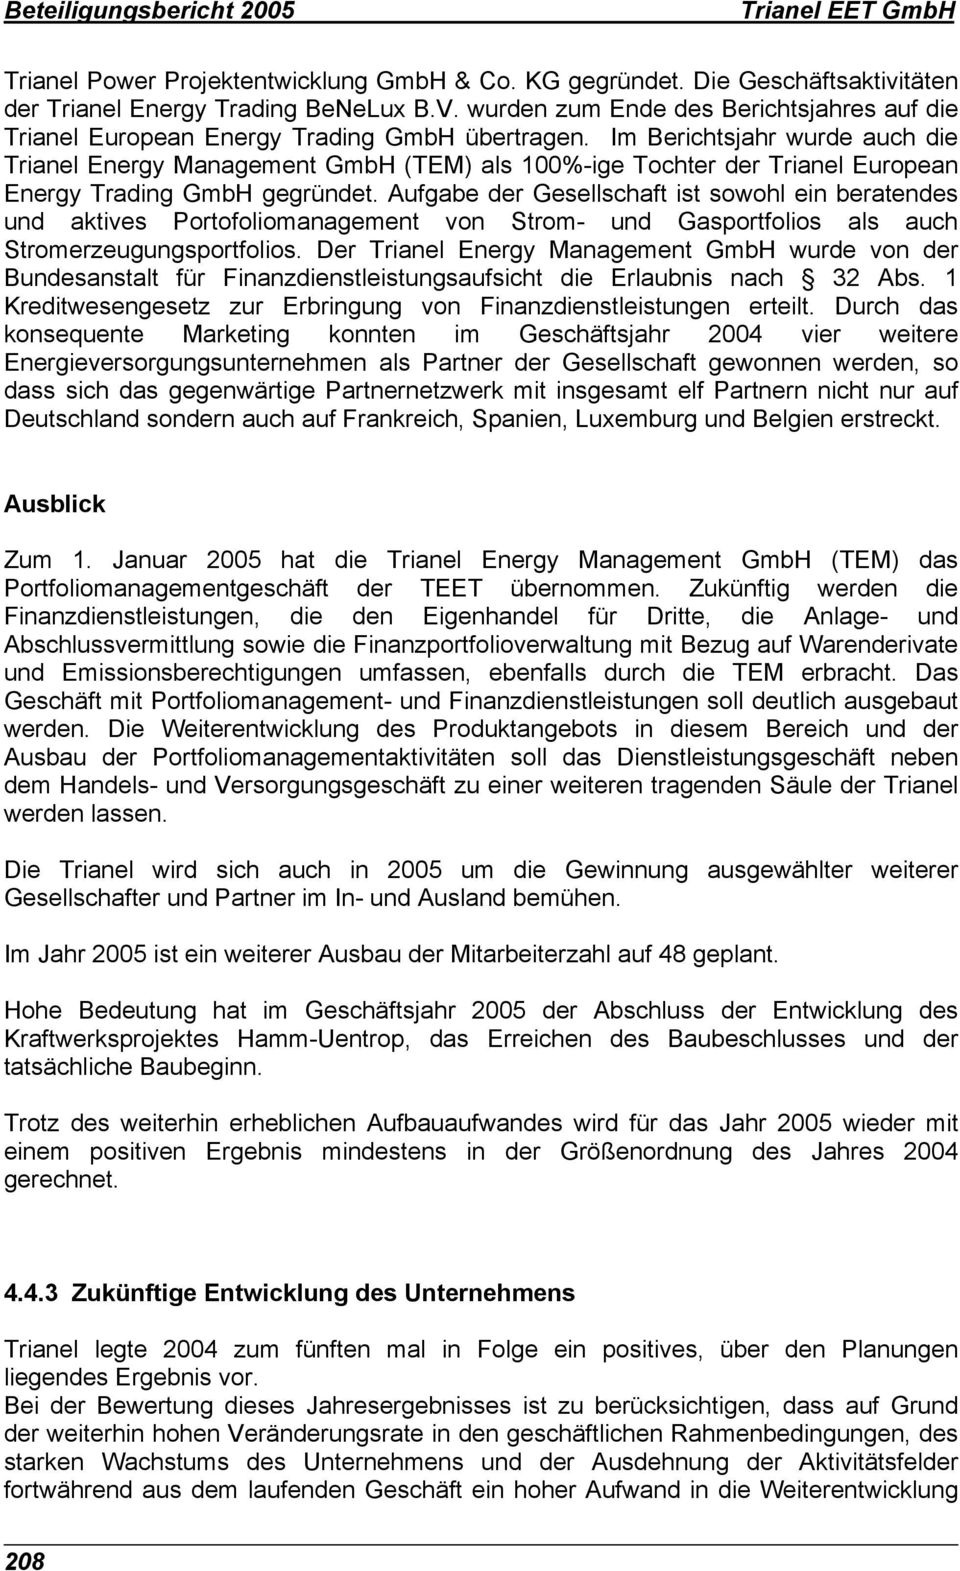 Im Berichtsjahr wurde auch die Trianel Energy Management GmbH (TEM) als 100%-ige Tochter der Trianel European Energy Trading GmbH gegründet.